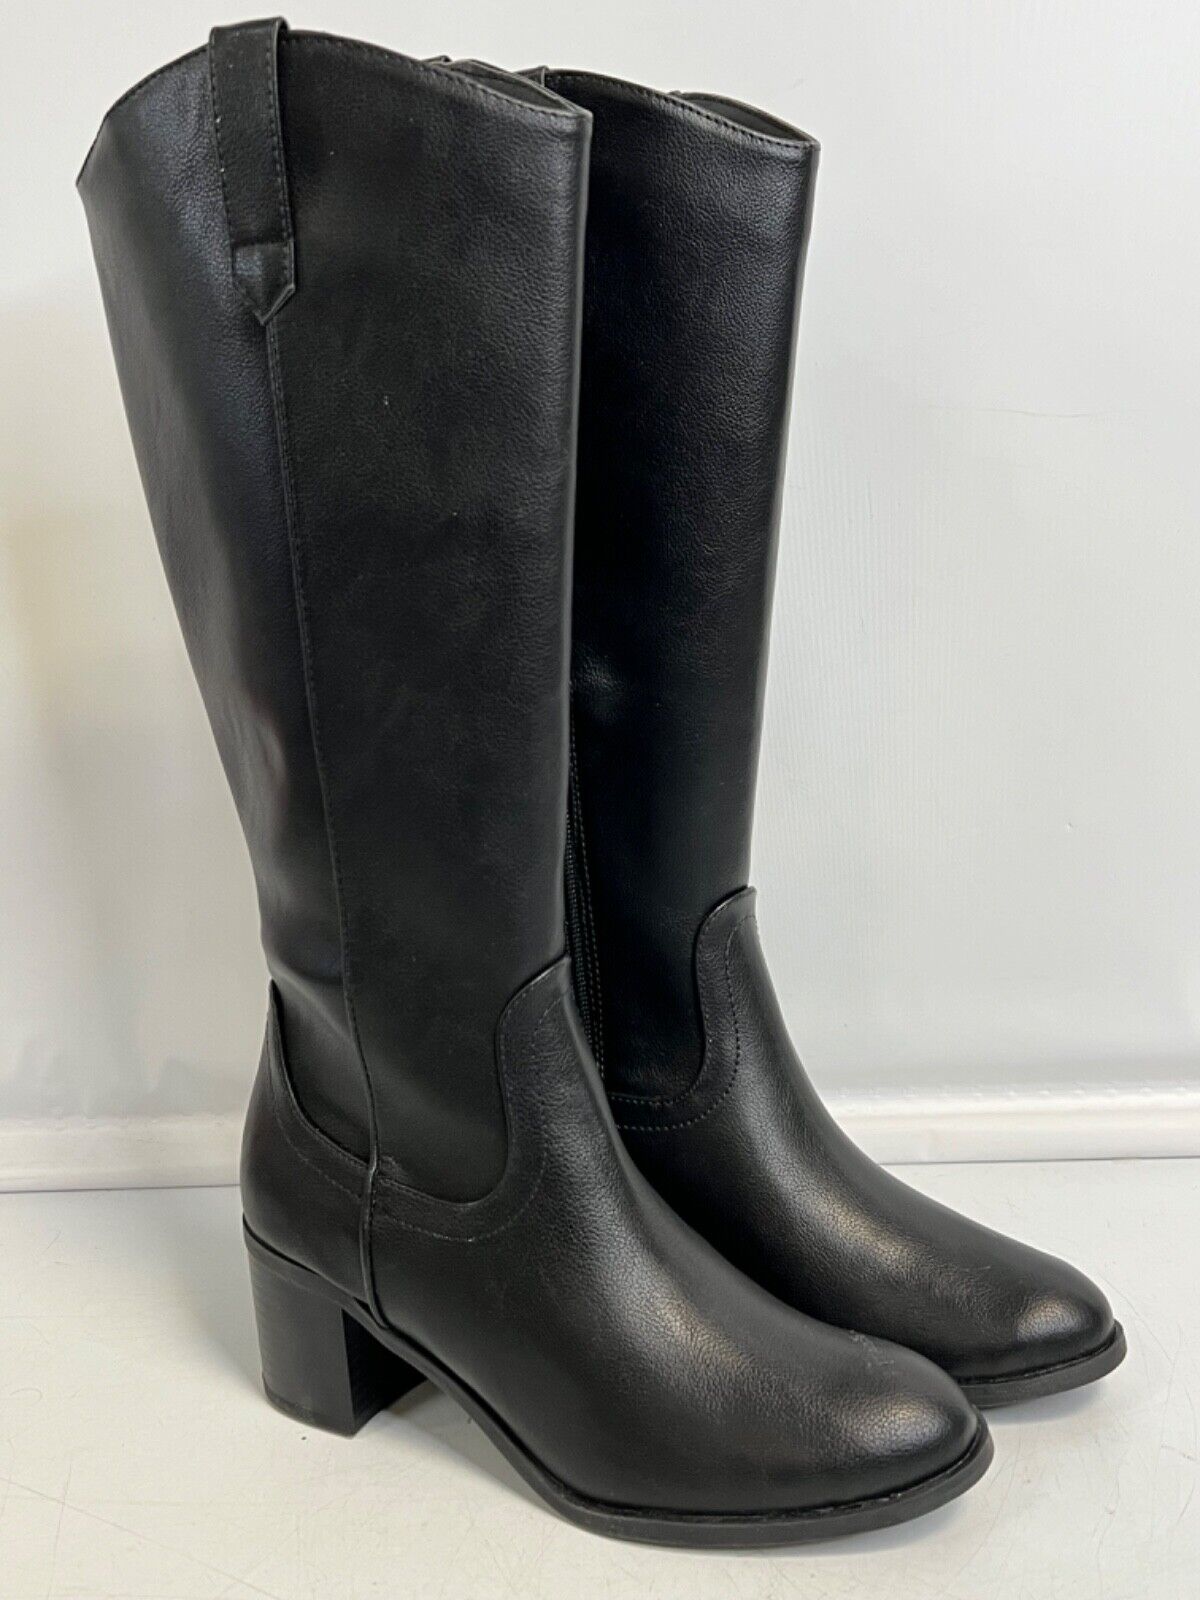 Lauren Conrad Proof Women\'s Knee-High Boots Black Women’s 6 M NIB